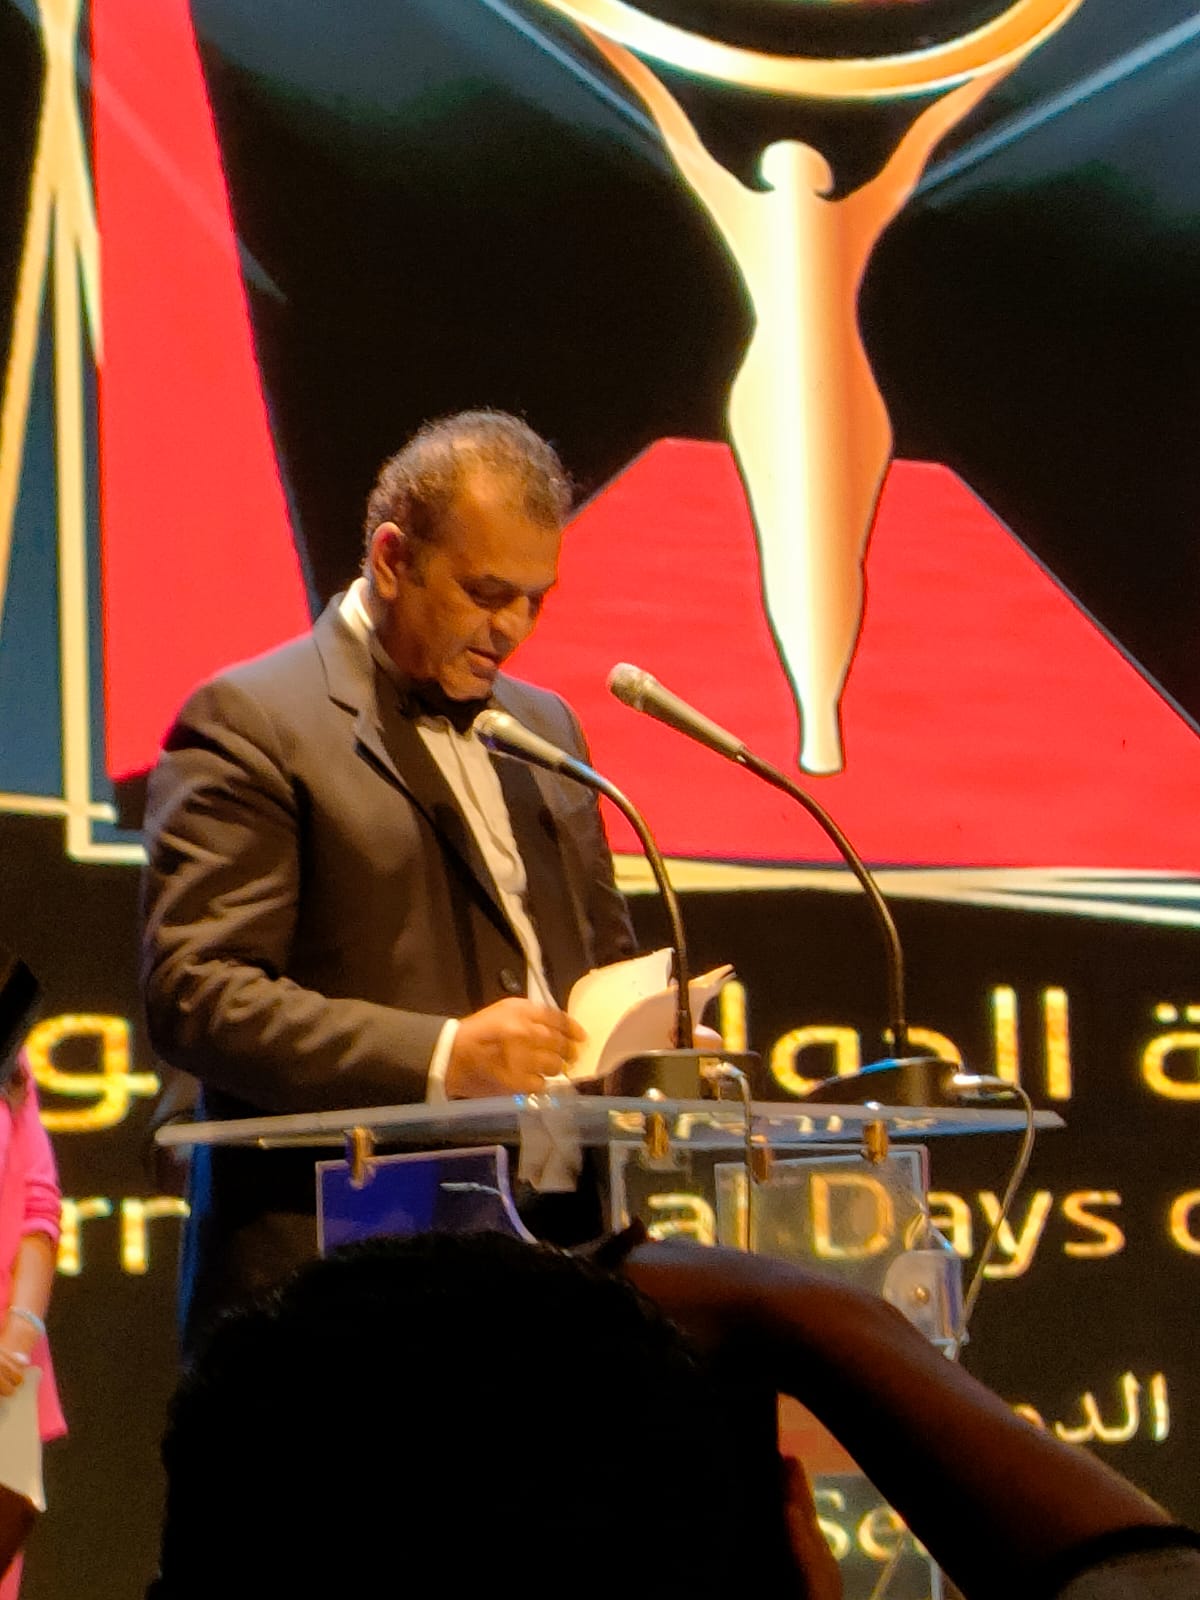 انطلاق الدورة الخامسة من مهرجان القاهرة الدولي للمونودراما وتكريم جلال والخميسي وجيرت وشمعة والألفي  (2)